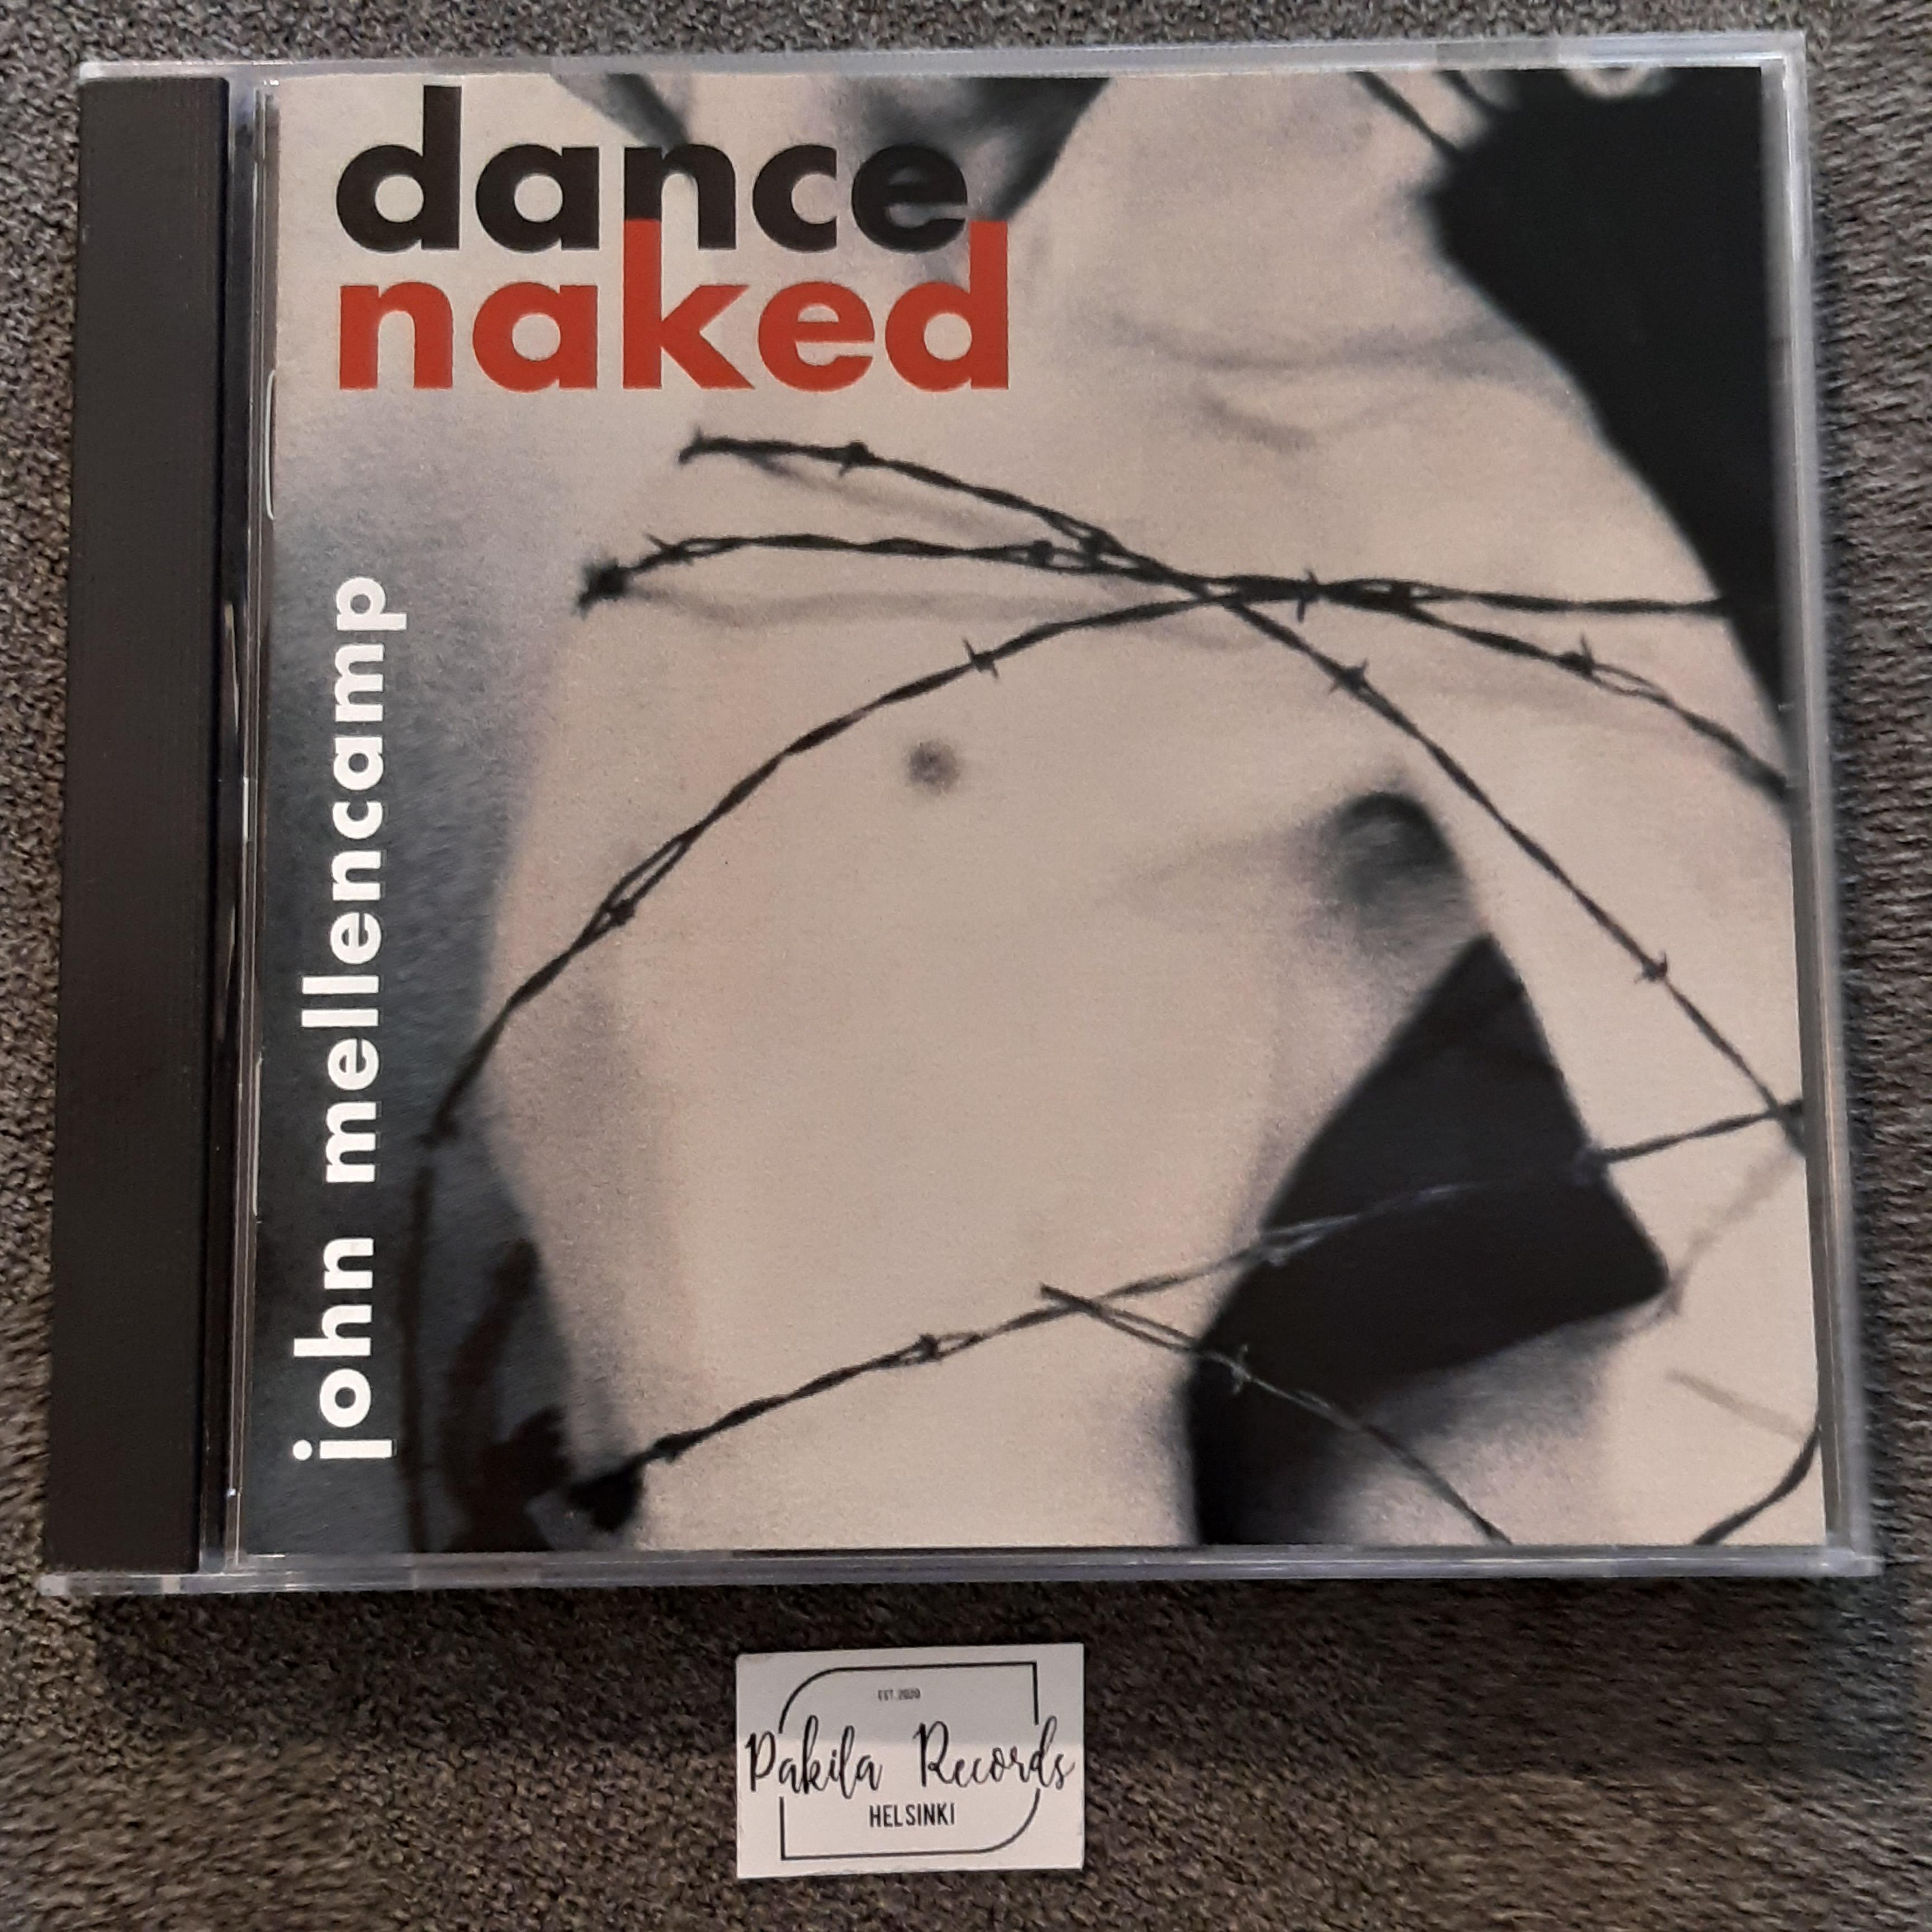 John Mellencamp - Dance Naked - CD (käytetty)